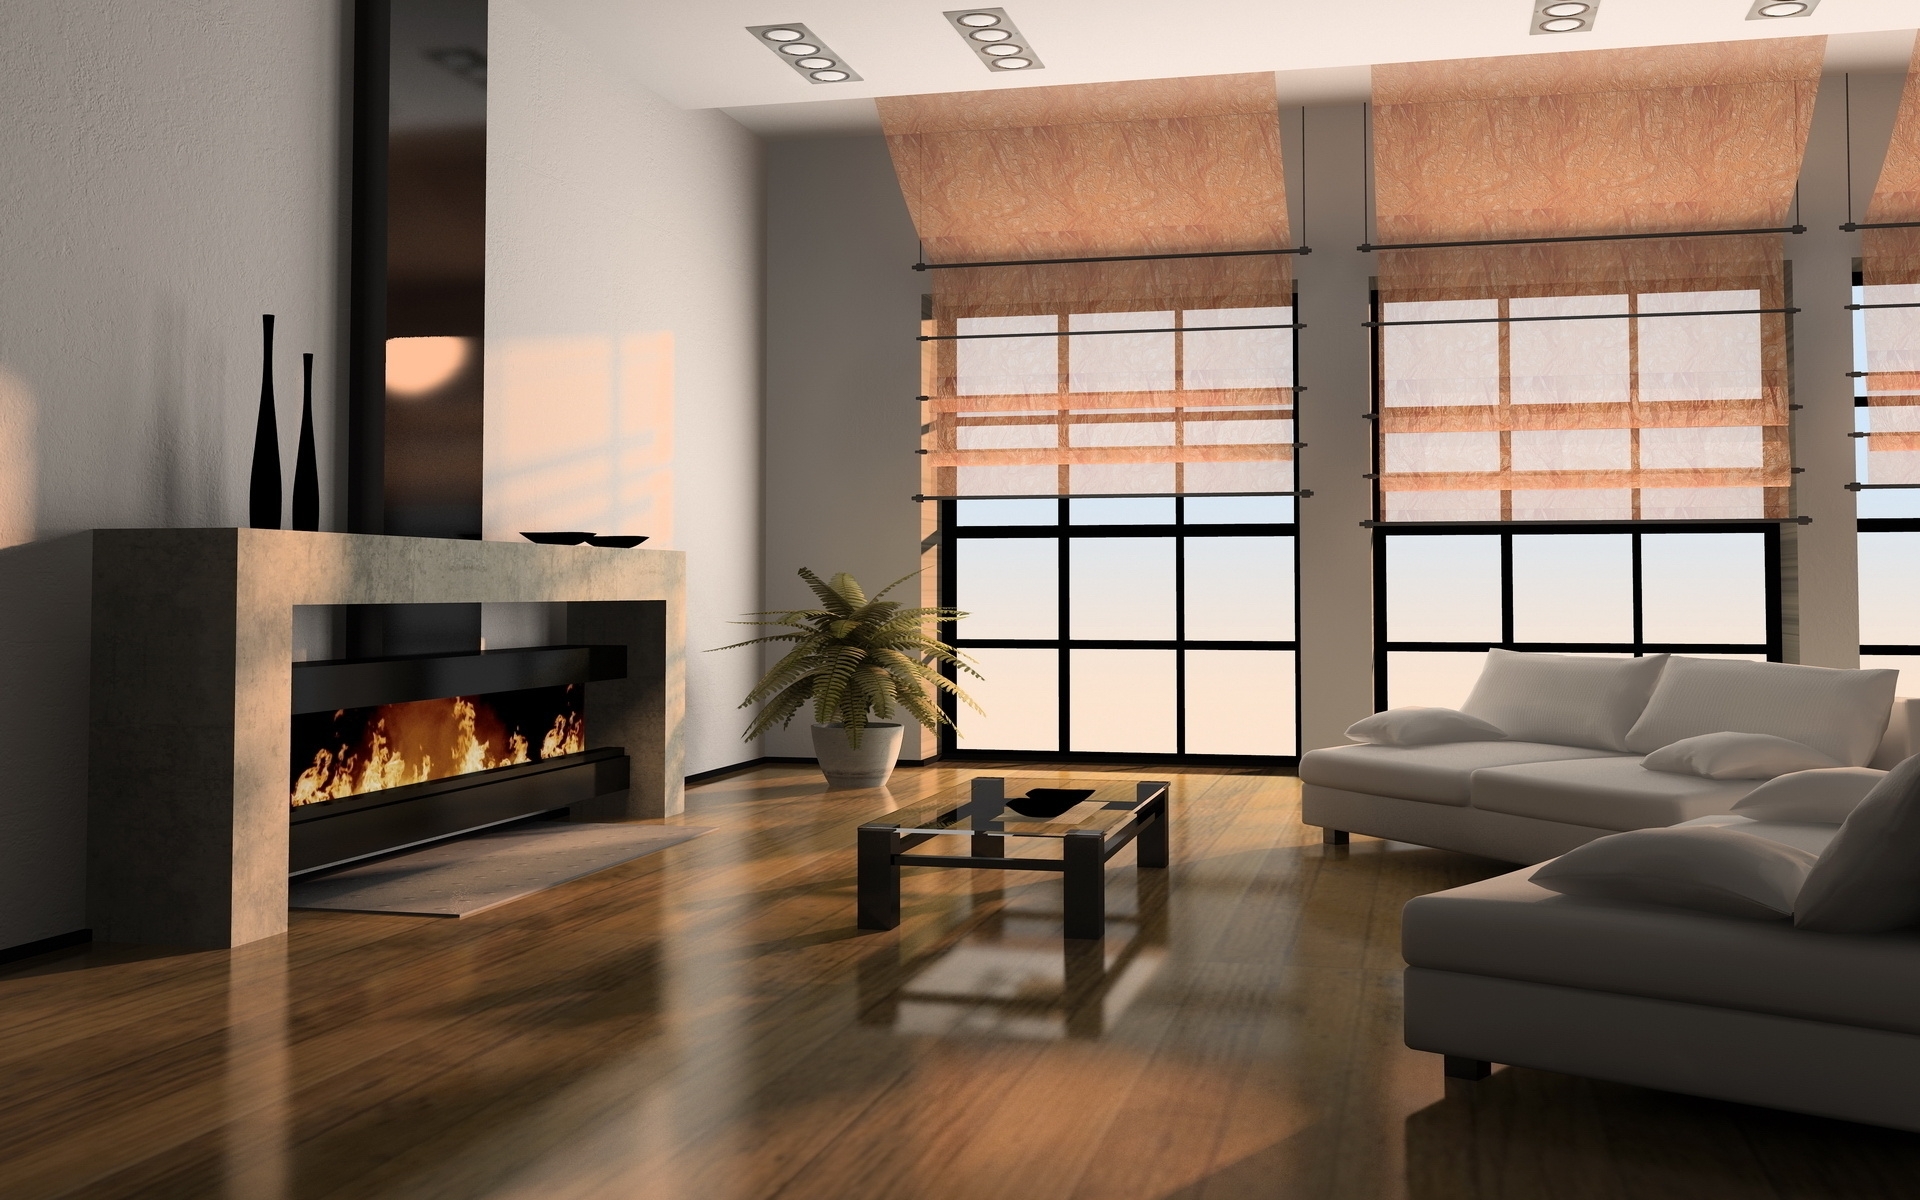 Fire Place Interior Lounge Modern Design HD Wallpaper